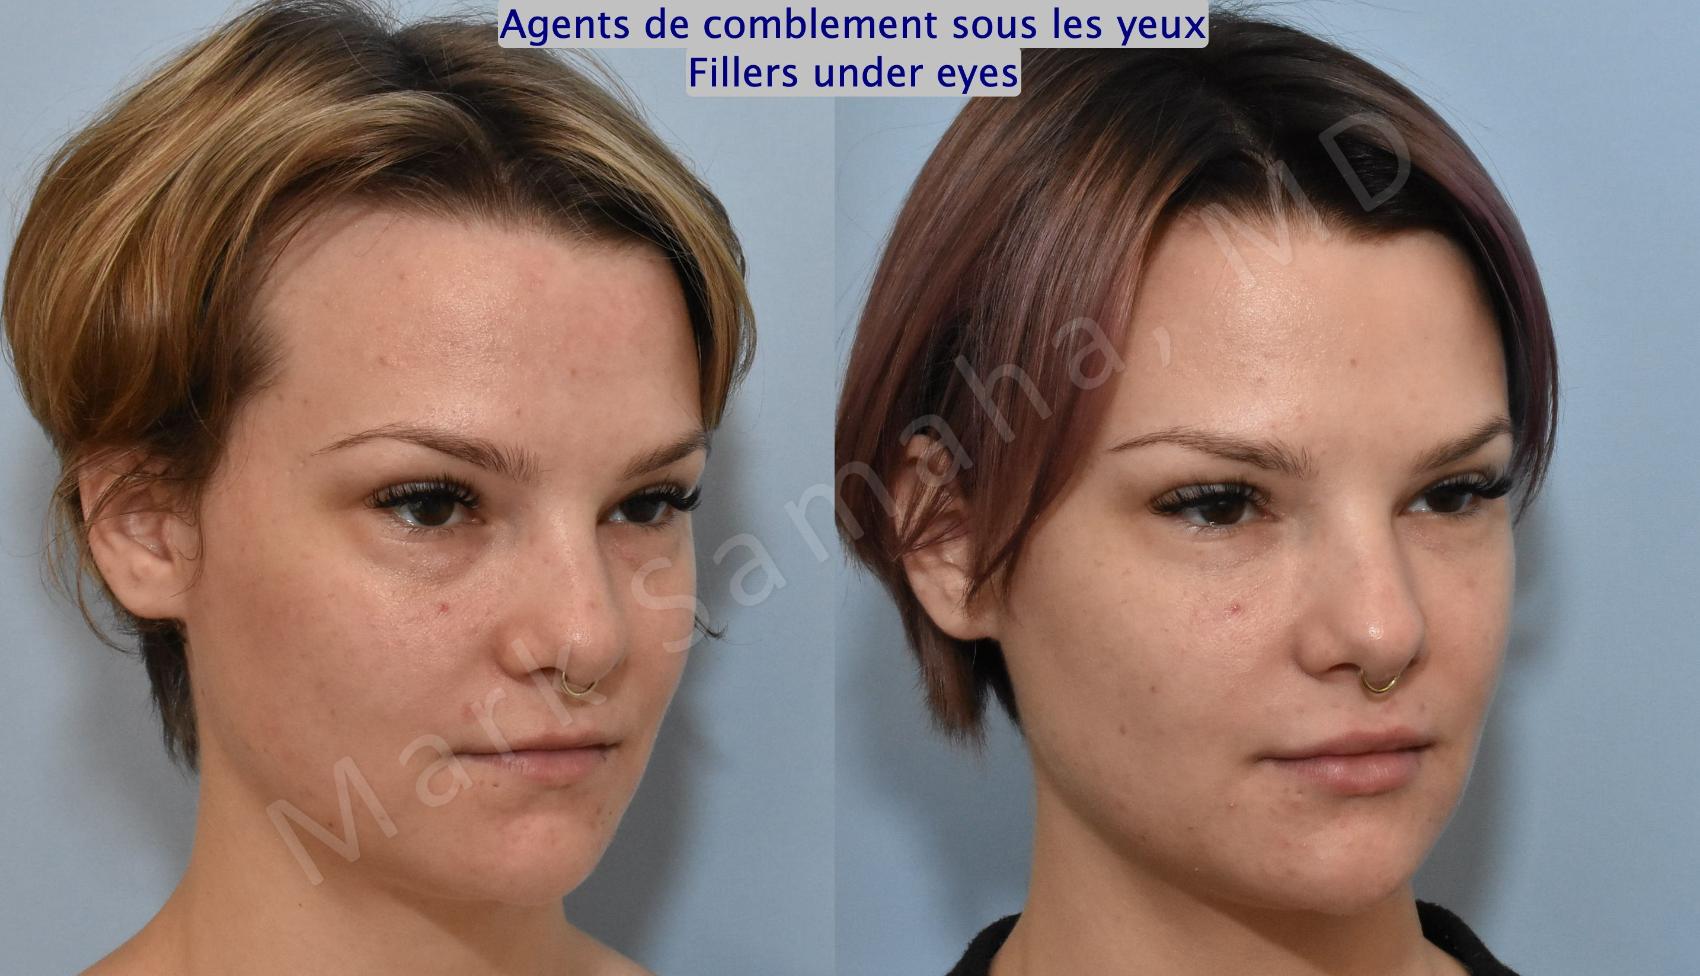 Before & After Agents de Comblement-Remplisseurs / Dermal Fillers Case 165 Right Oblique View in Montreal, QC